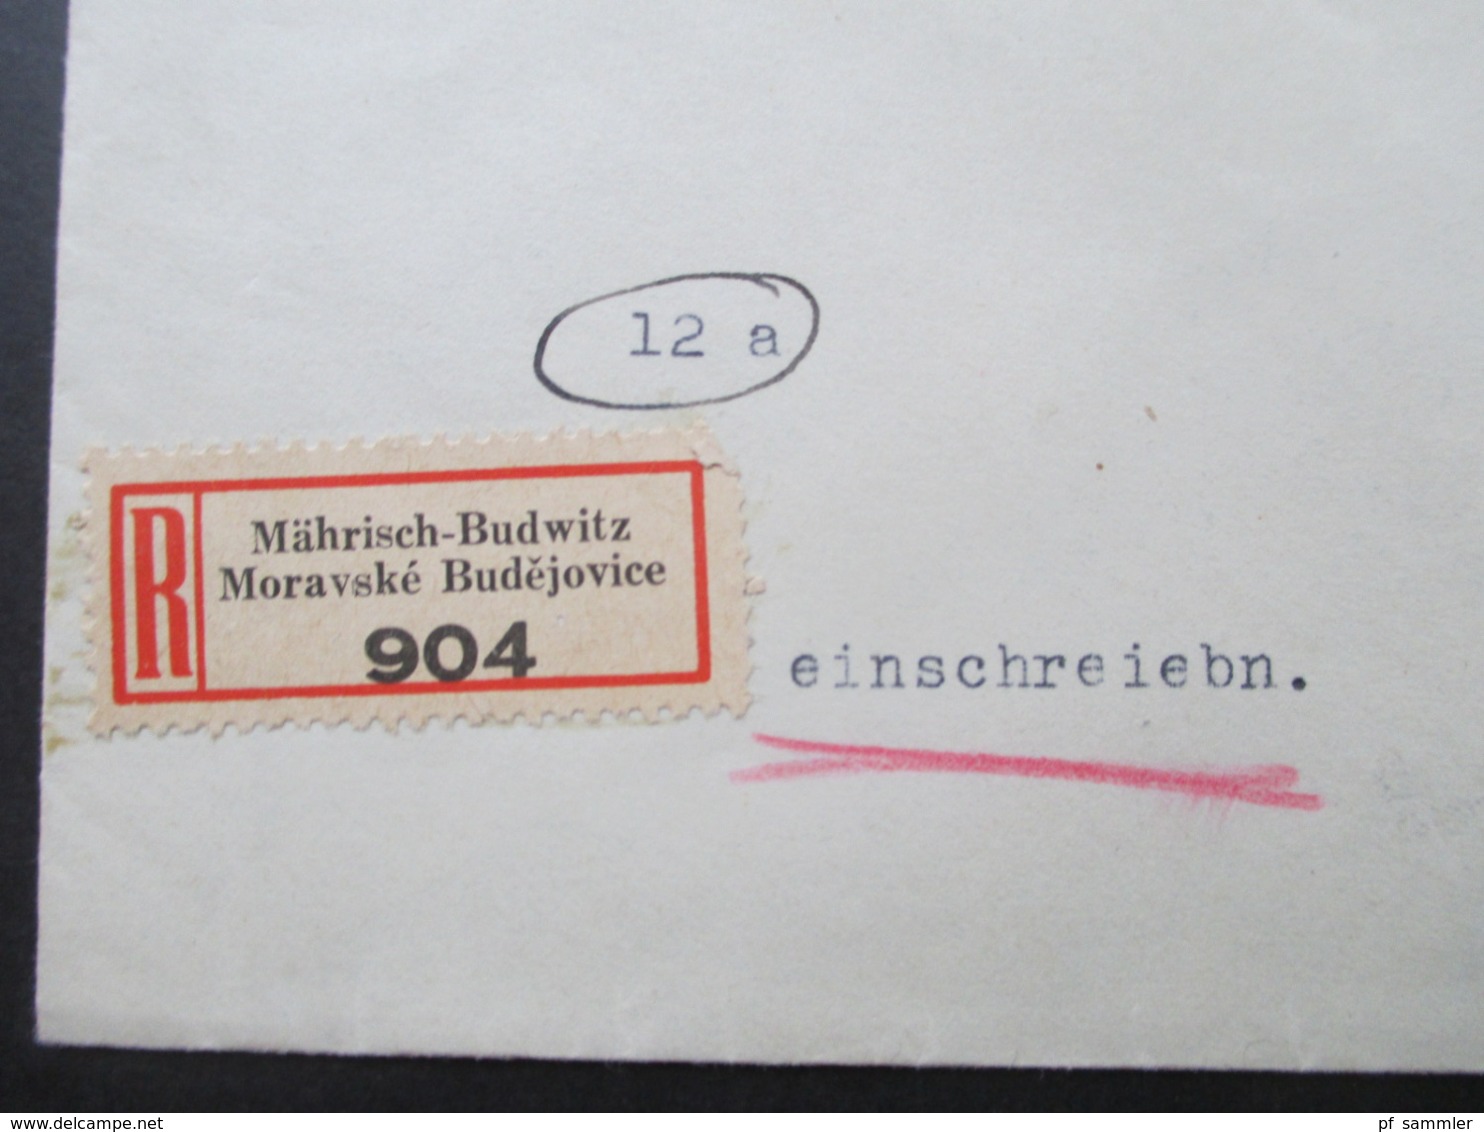 Böhmen Und Mähren Einschreiben 2 Sprachiger E Zettel Mährisch Budwitz Moravske Budejovice - Wien Freimarken Adoif Hitler - Lettres & Documents